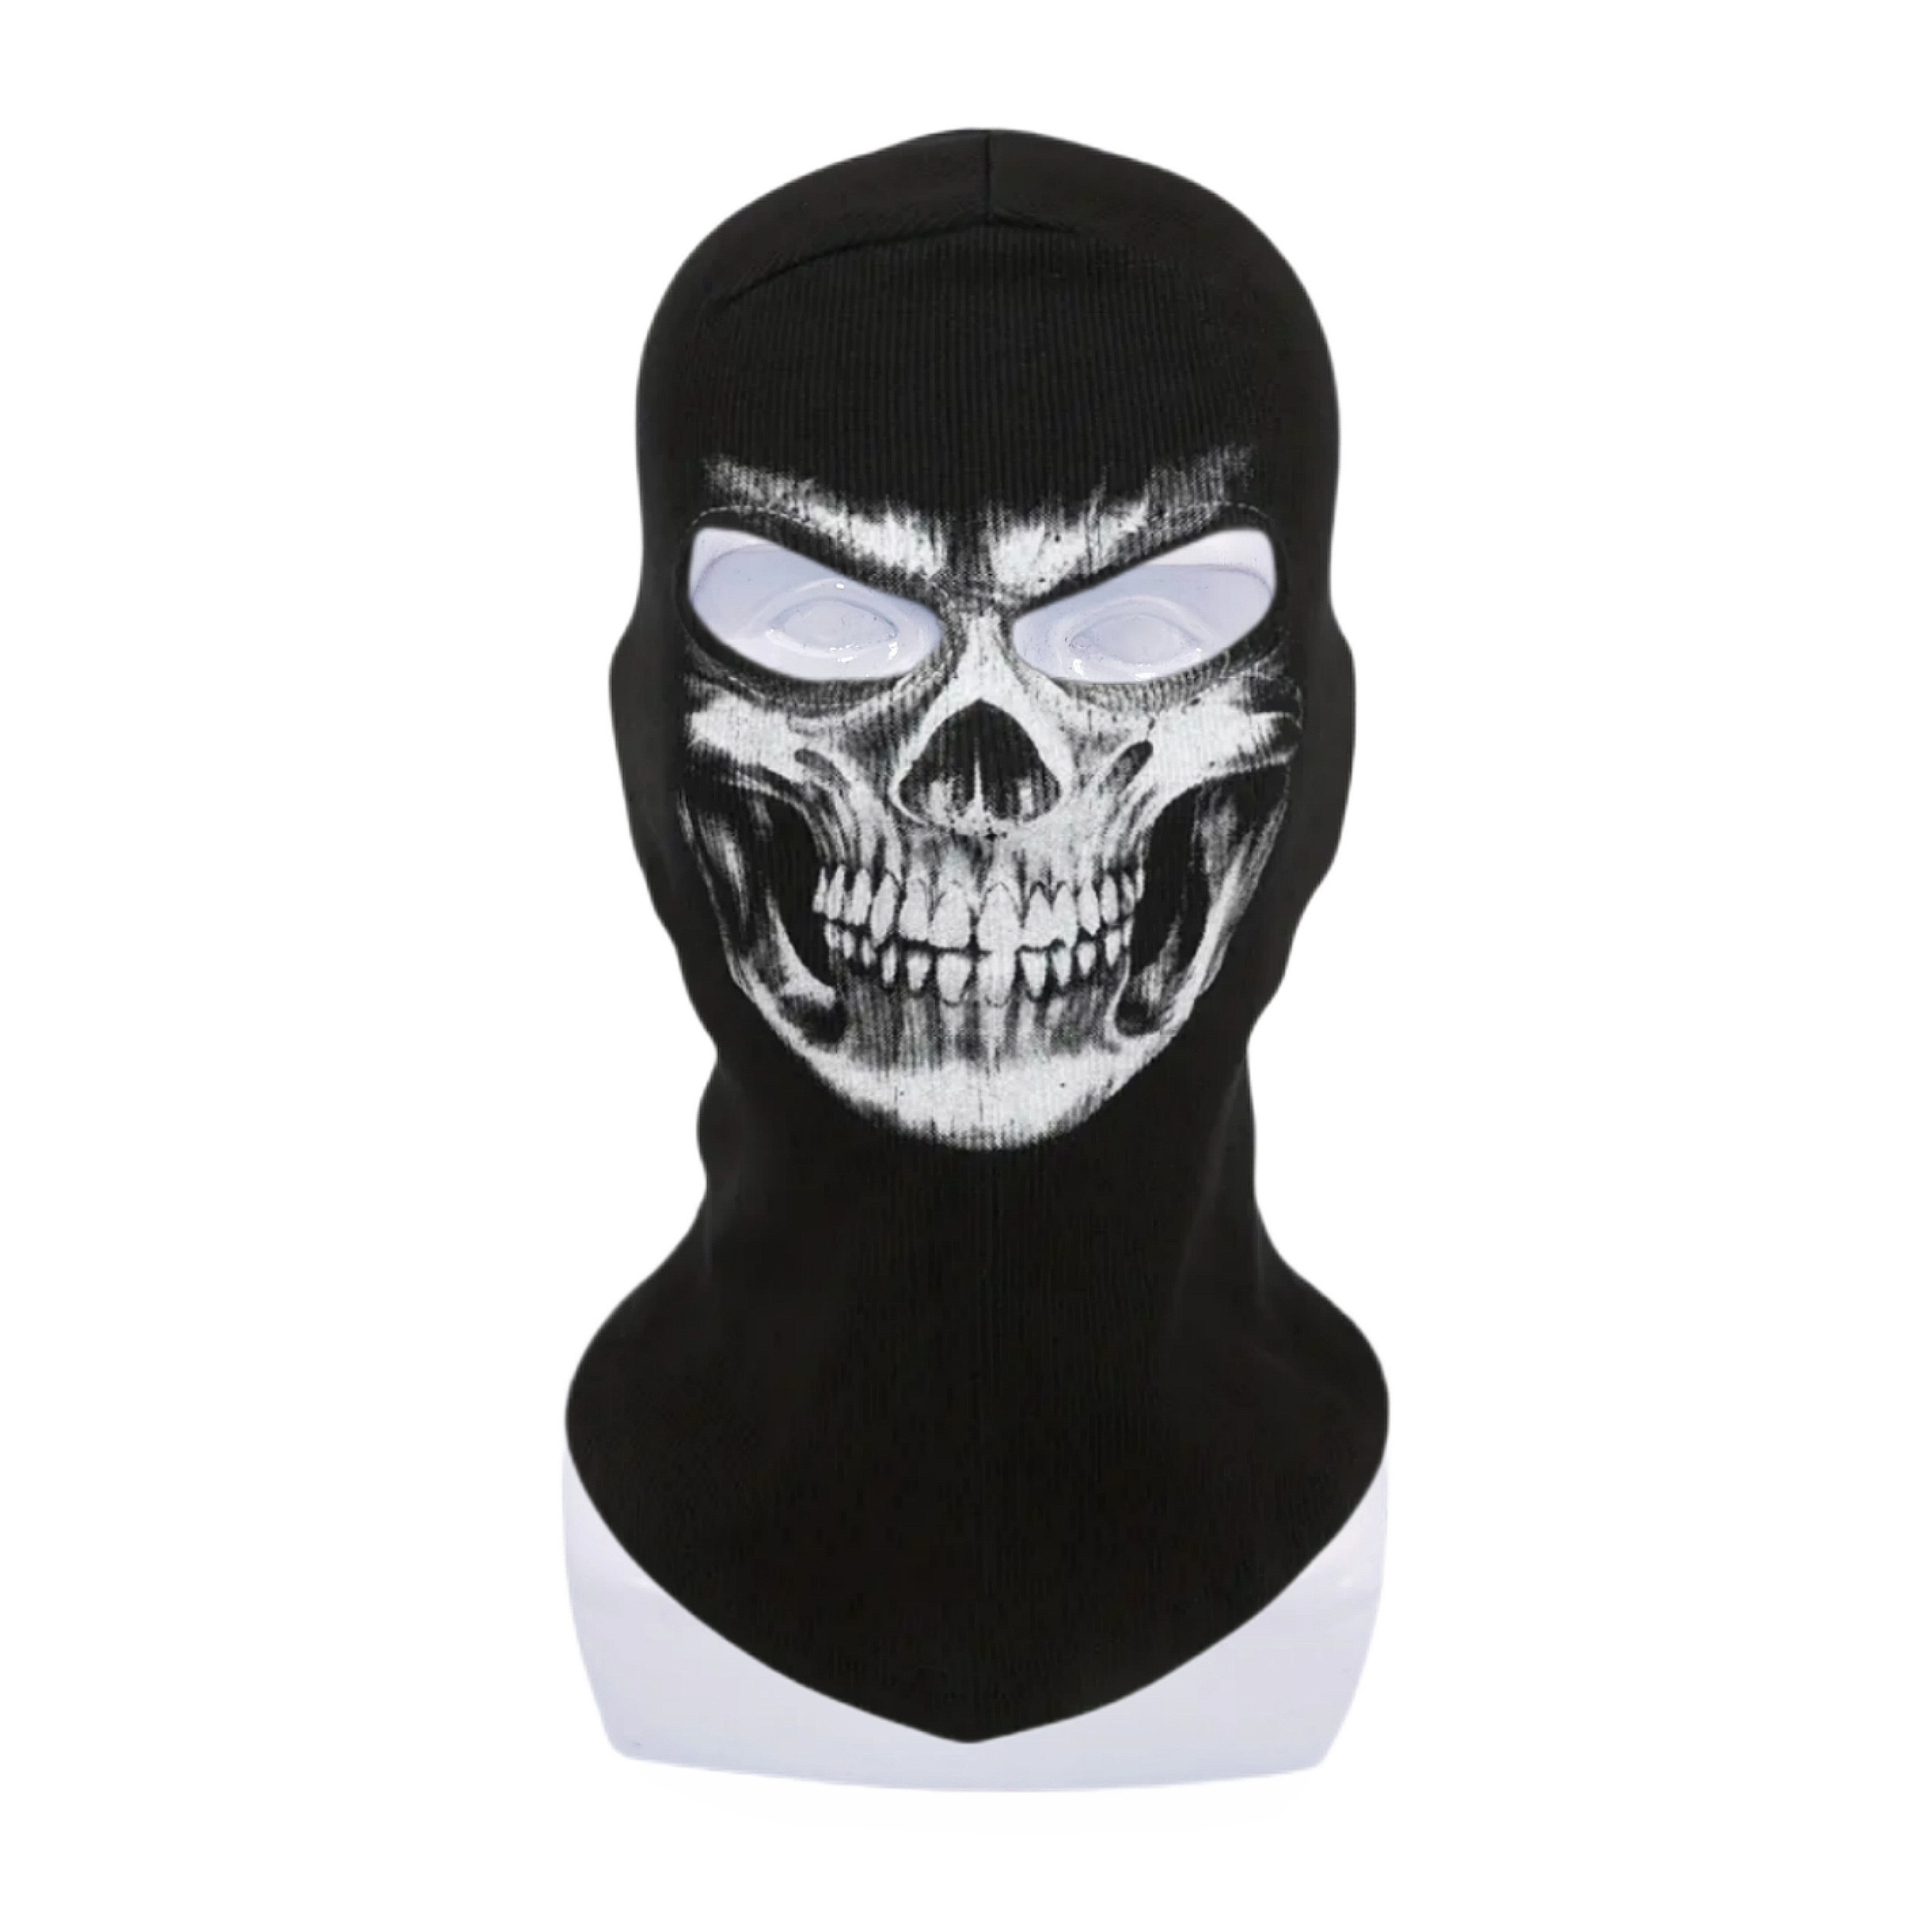 Haute qualité MX2 Call Of Duty fantôme masque cagoule visage fantôme crâne  masque motard Halloween – acheter aux petits prix dans la boutique en ligne